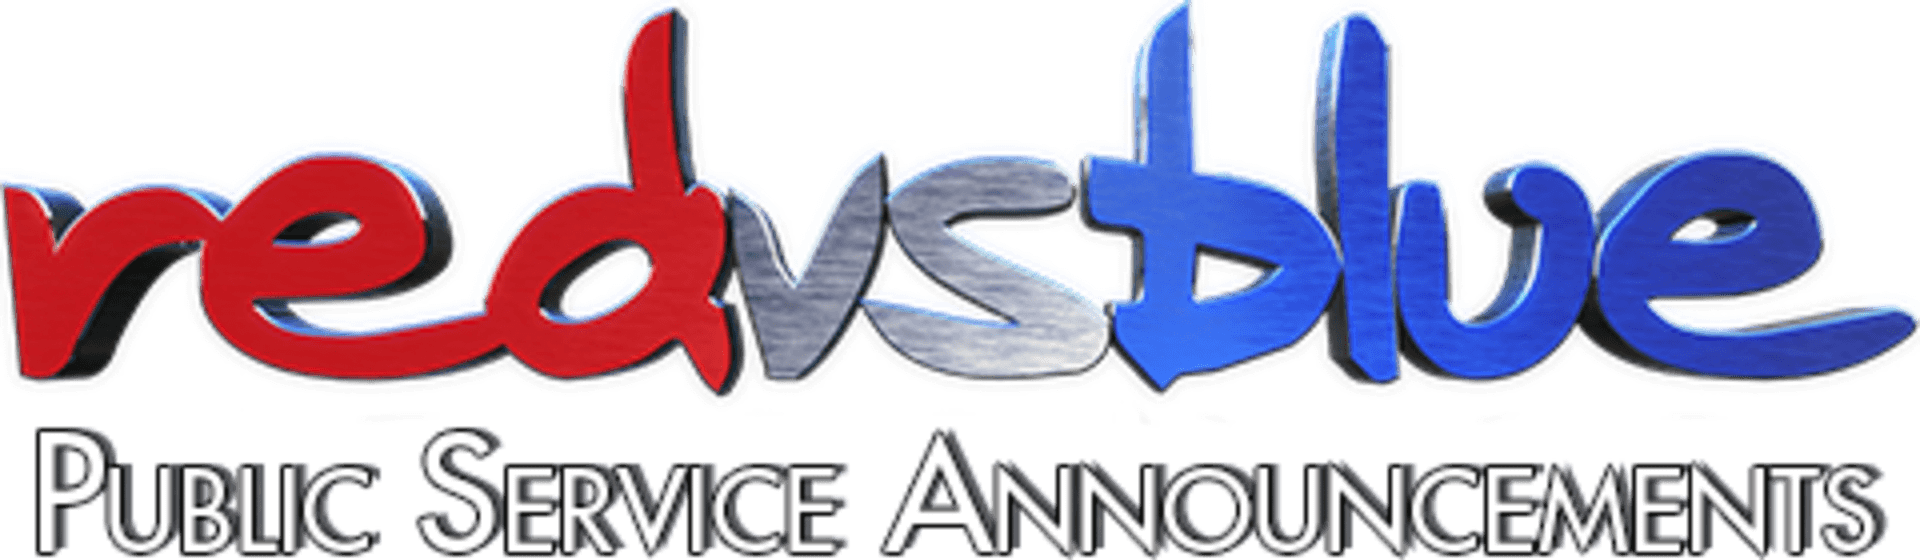 Red Vs. Blue Logo - Series Red vs. Blue PSA